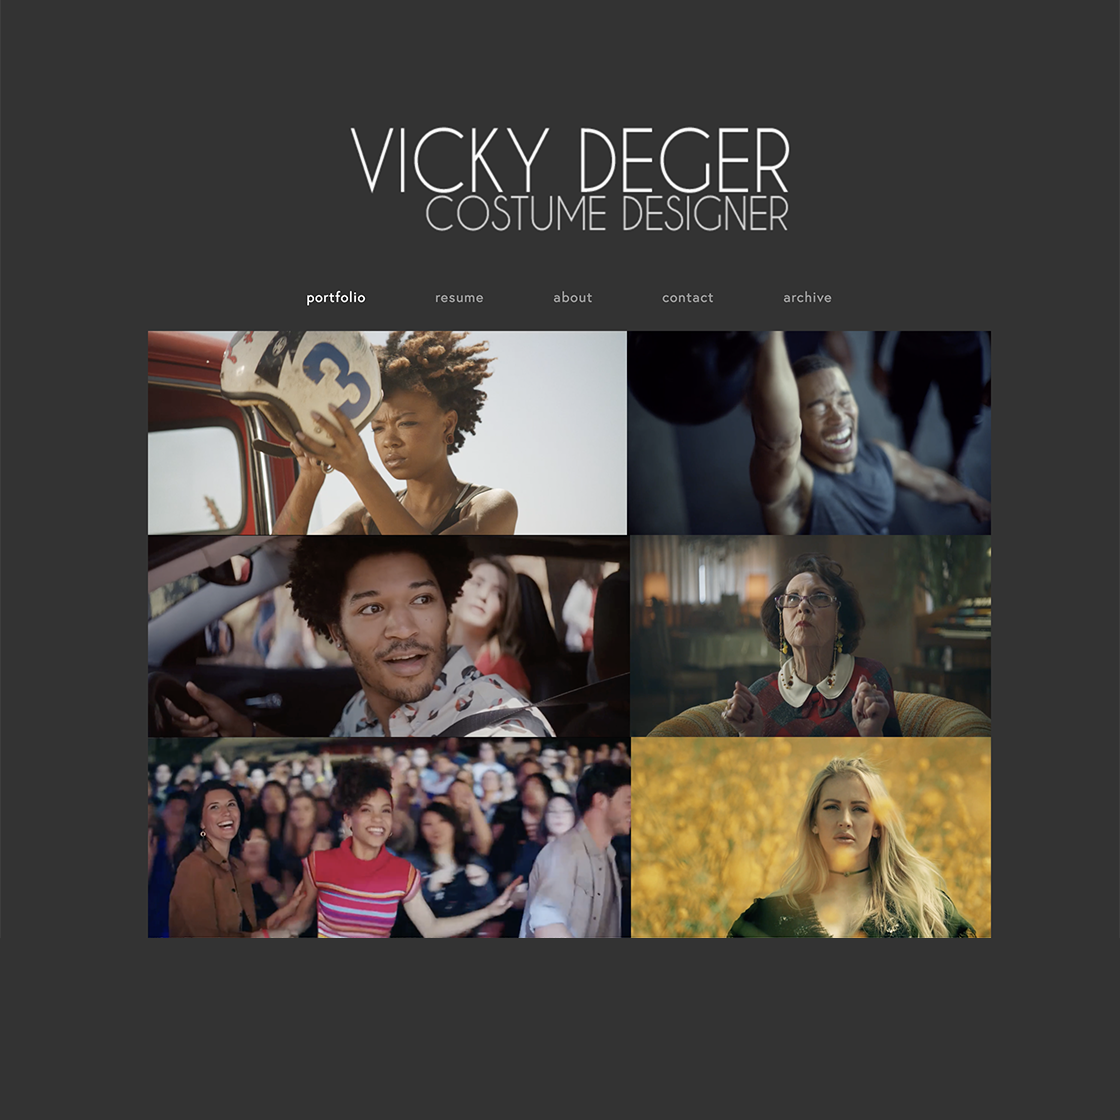 Vicky Deger